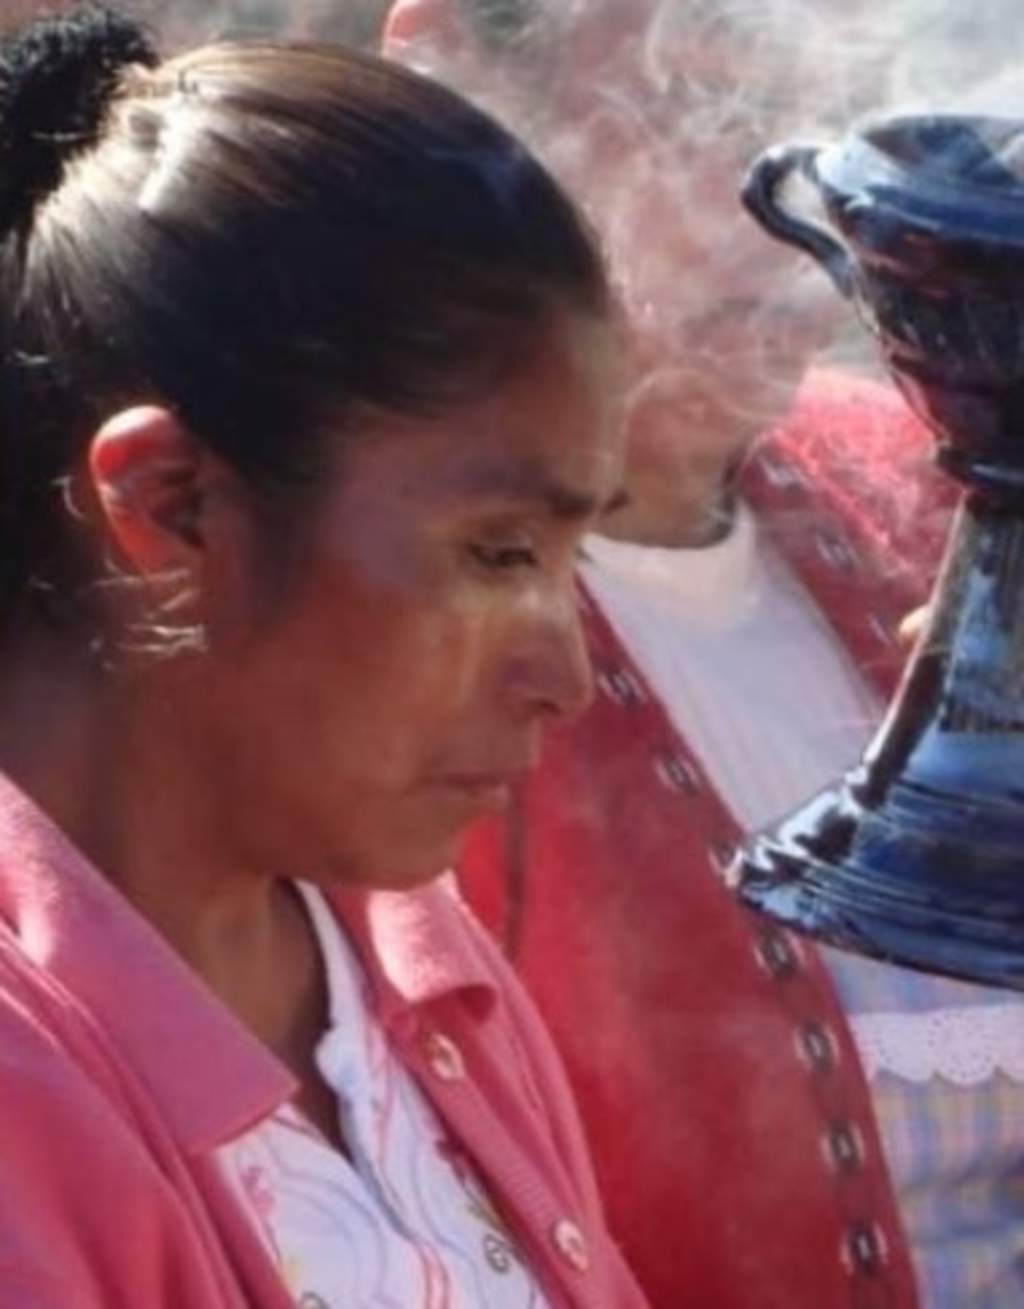 La Comisión Nacional de los Derechos Humanos (CNDH) solicitó a diversas autoridades del Estado de México que implementen medidas cautelares para proteger a familiares de la lideresa indígena Eulogia Lilia Díaz Ortiz, asesinada recientemente. (FACEBOOK)